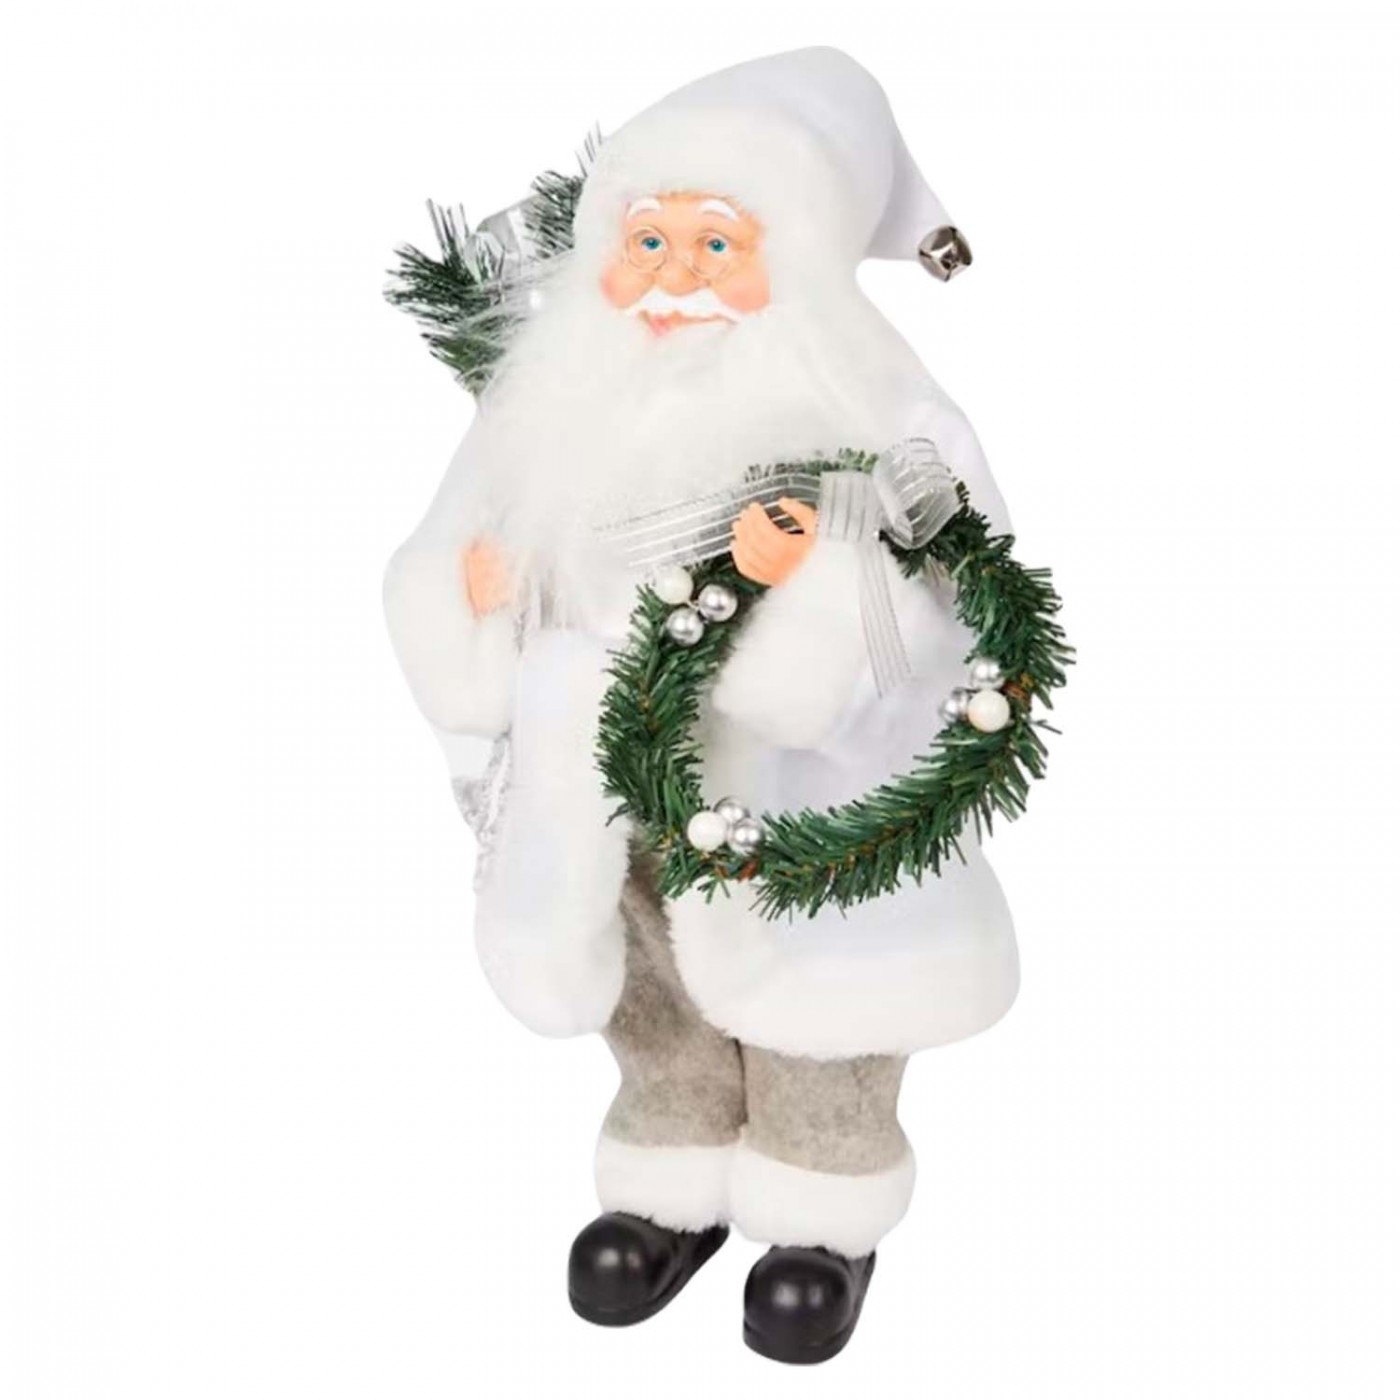 Figurka świąteczna dekoracyjna - Święty Mikołaj - 50 cm